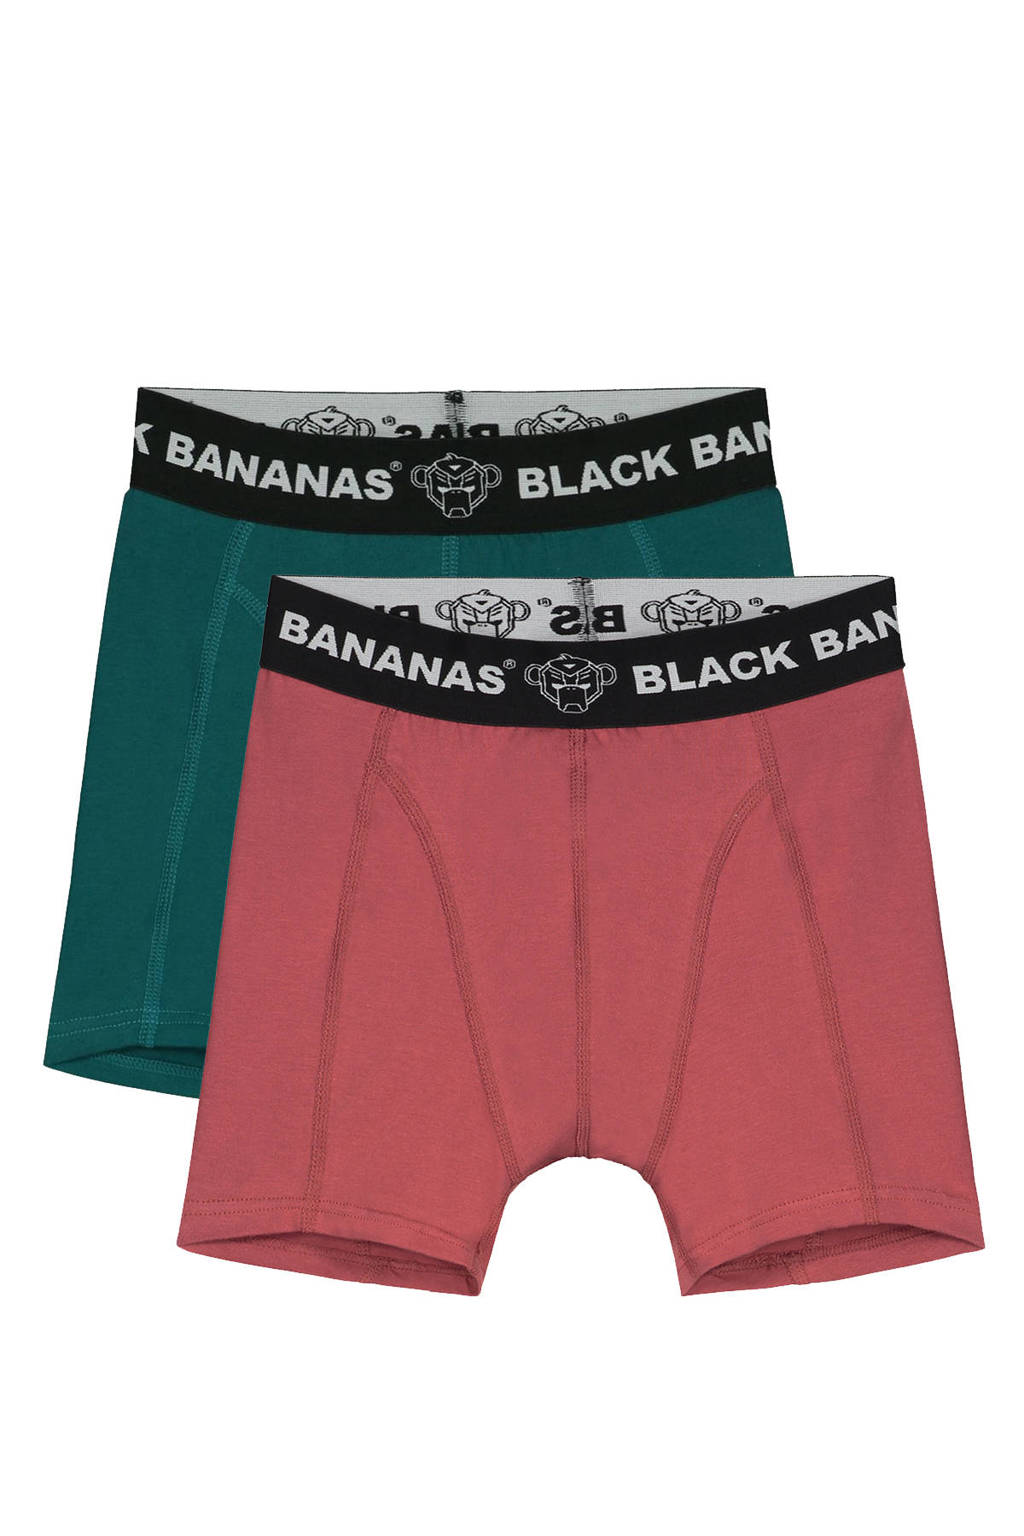 BLACK BANANAS   boxershort - set van 2 groen/rood, Groen/rood